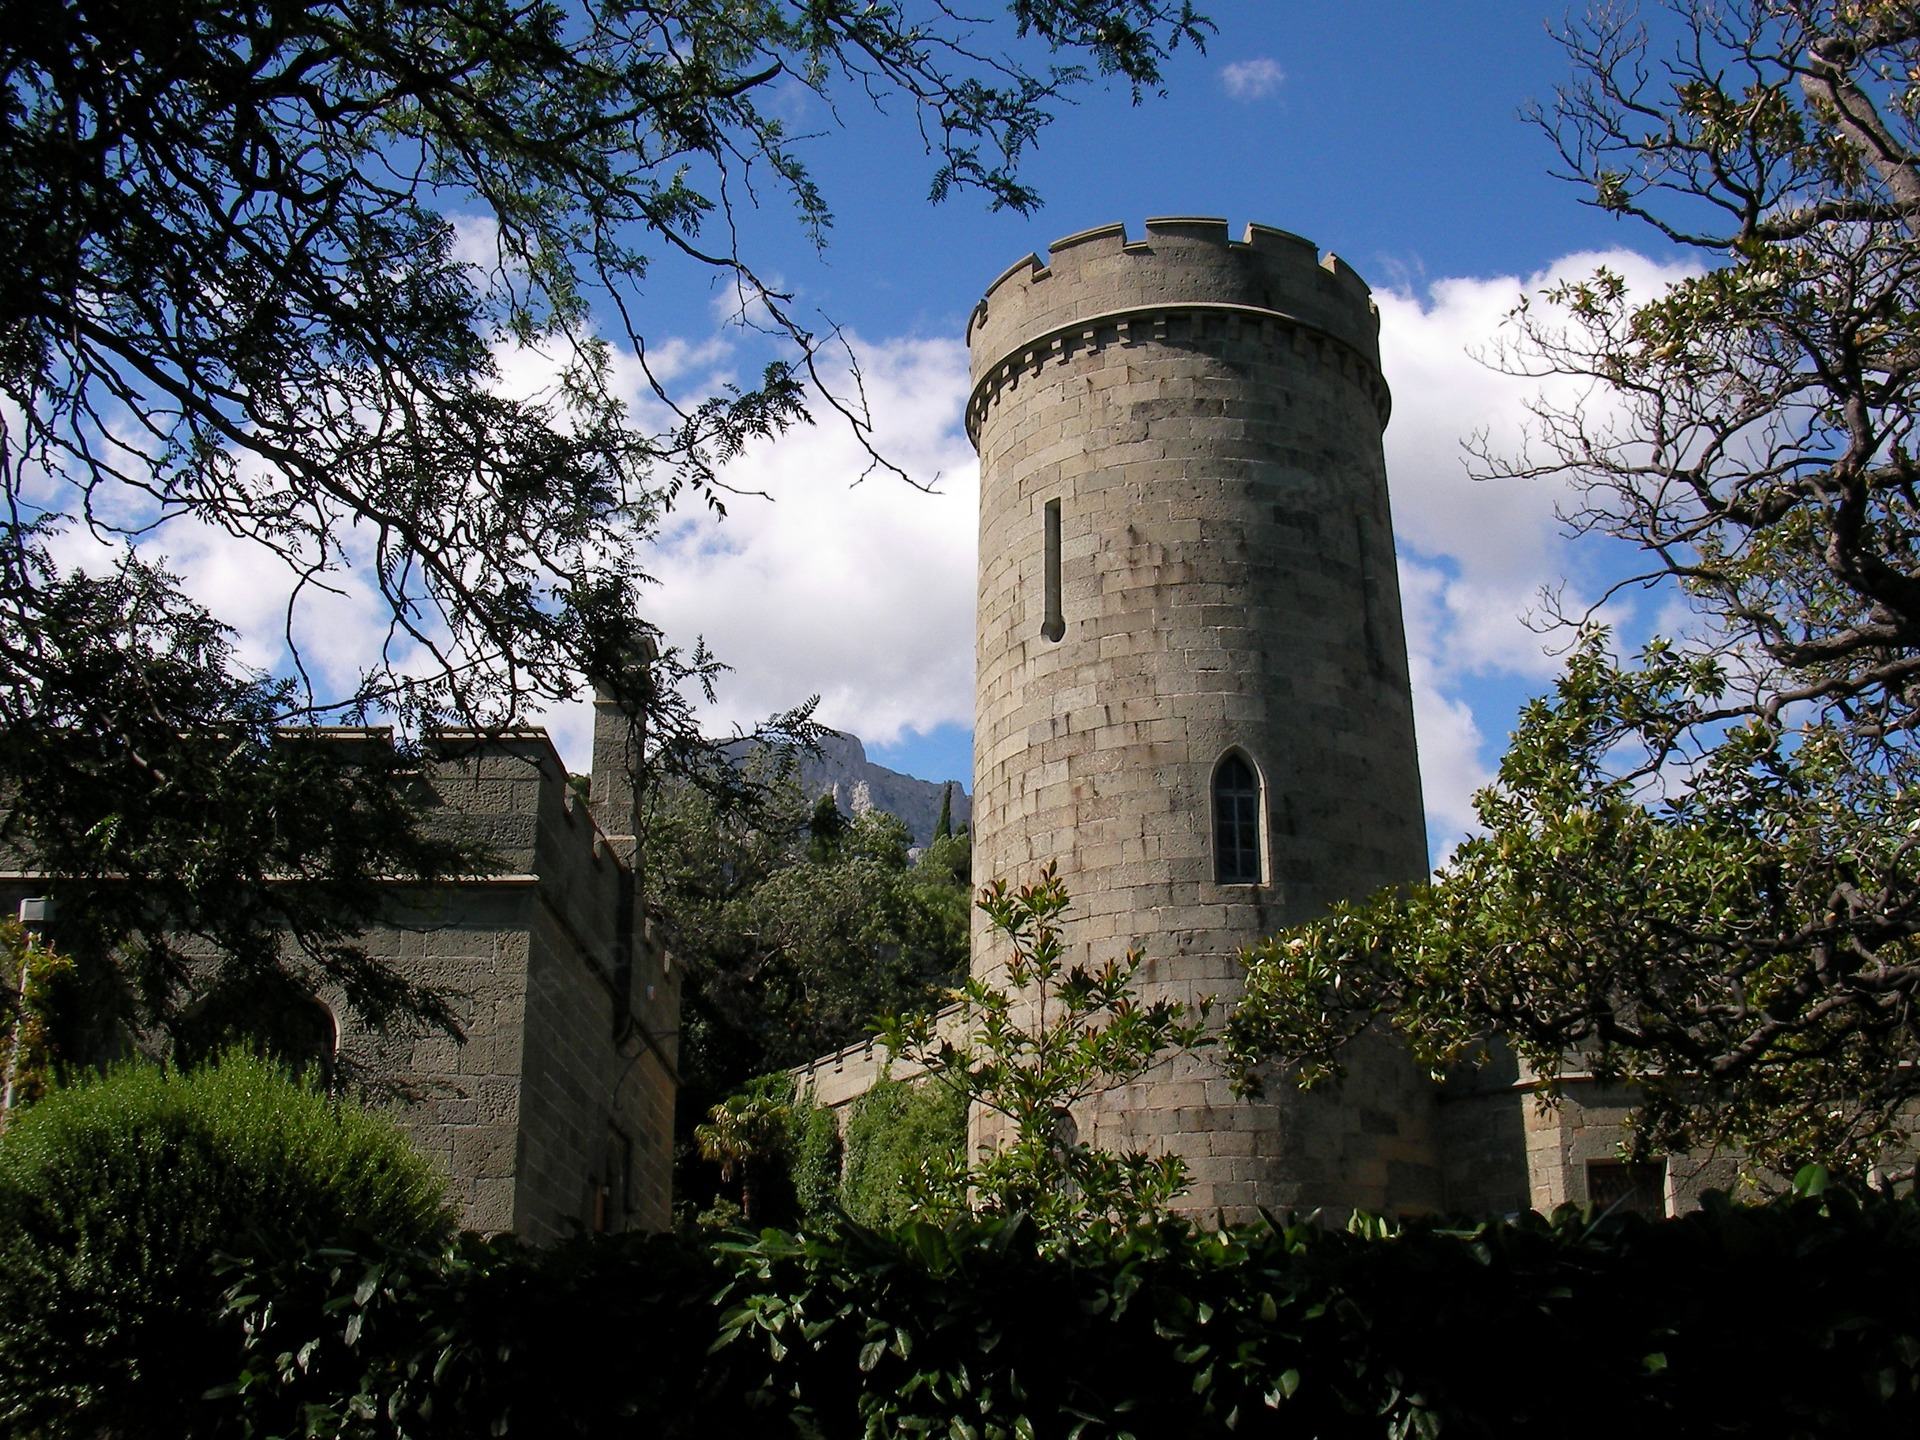 Castle tower in Vorontsov park